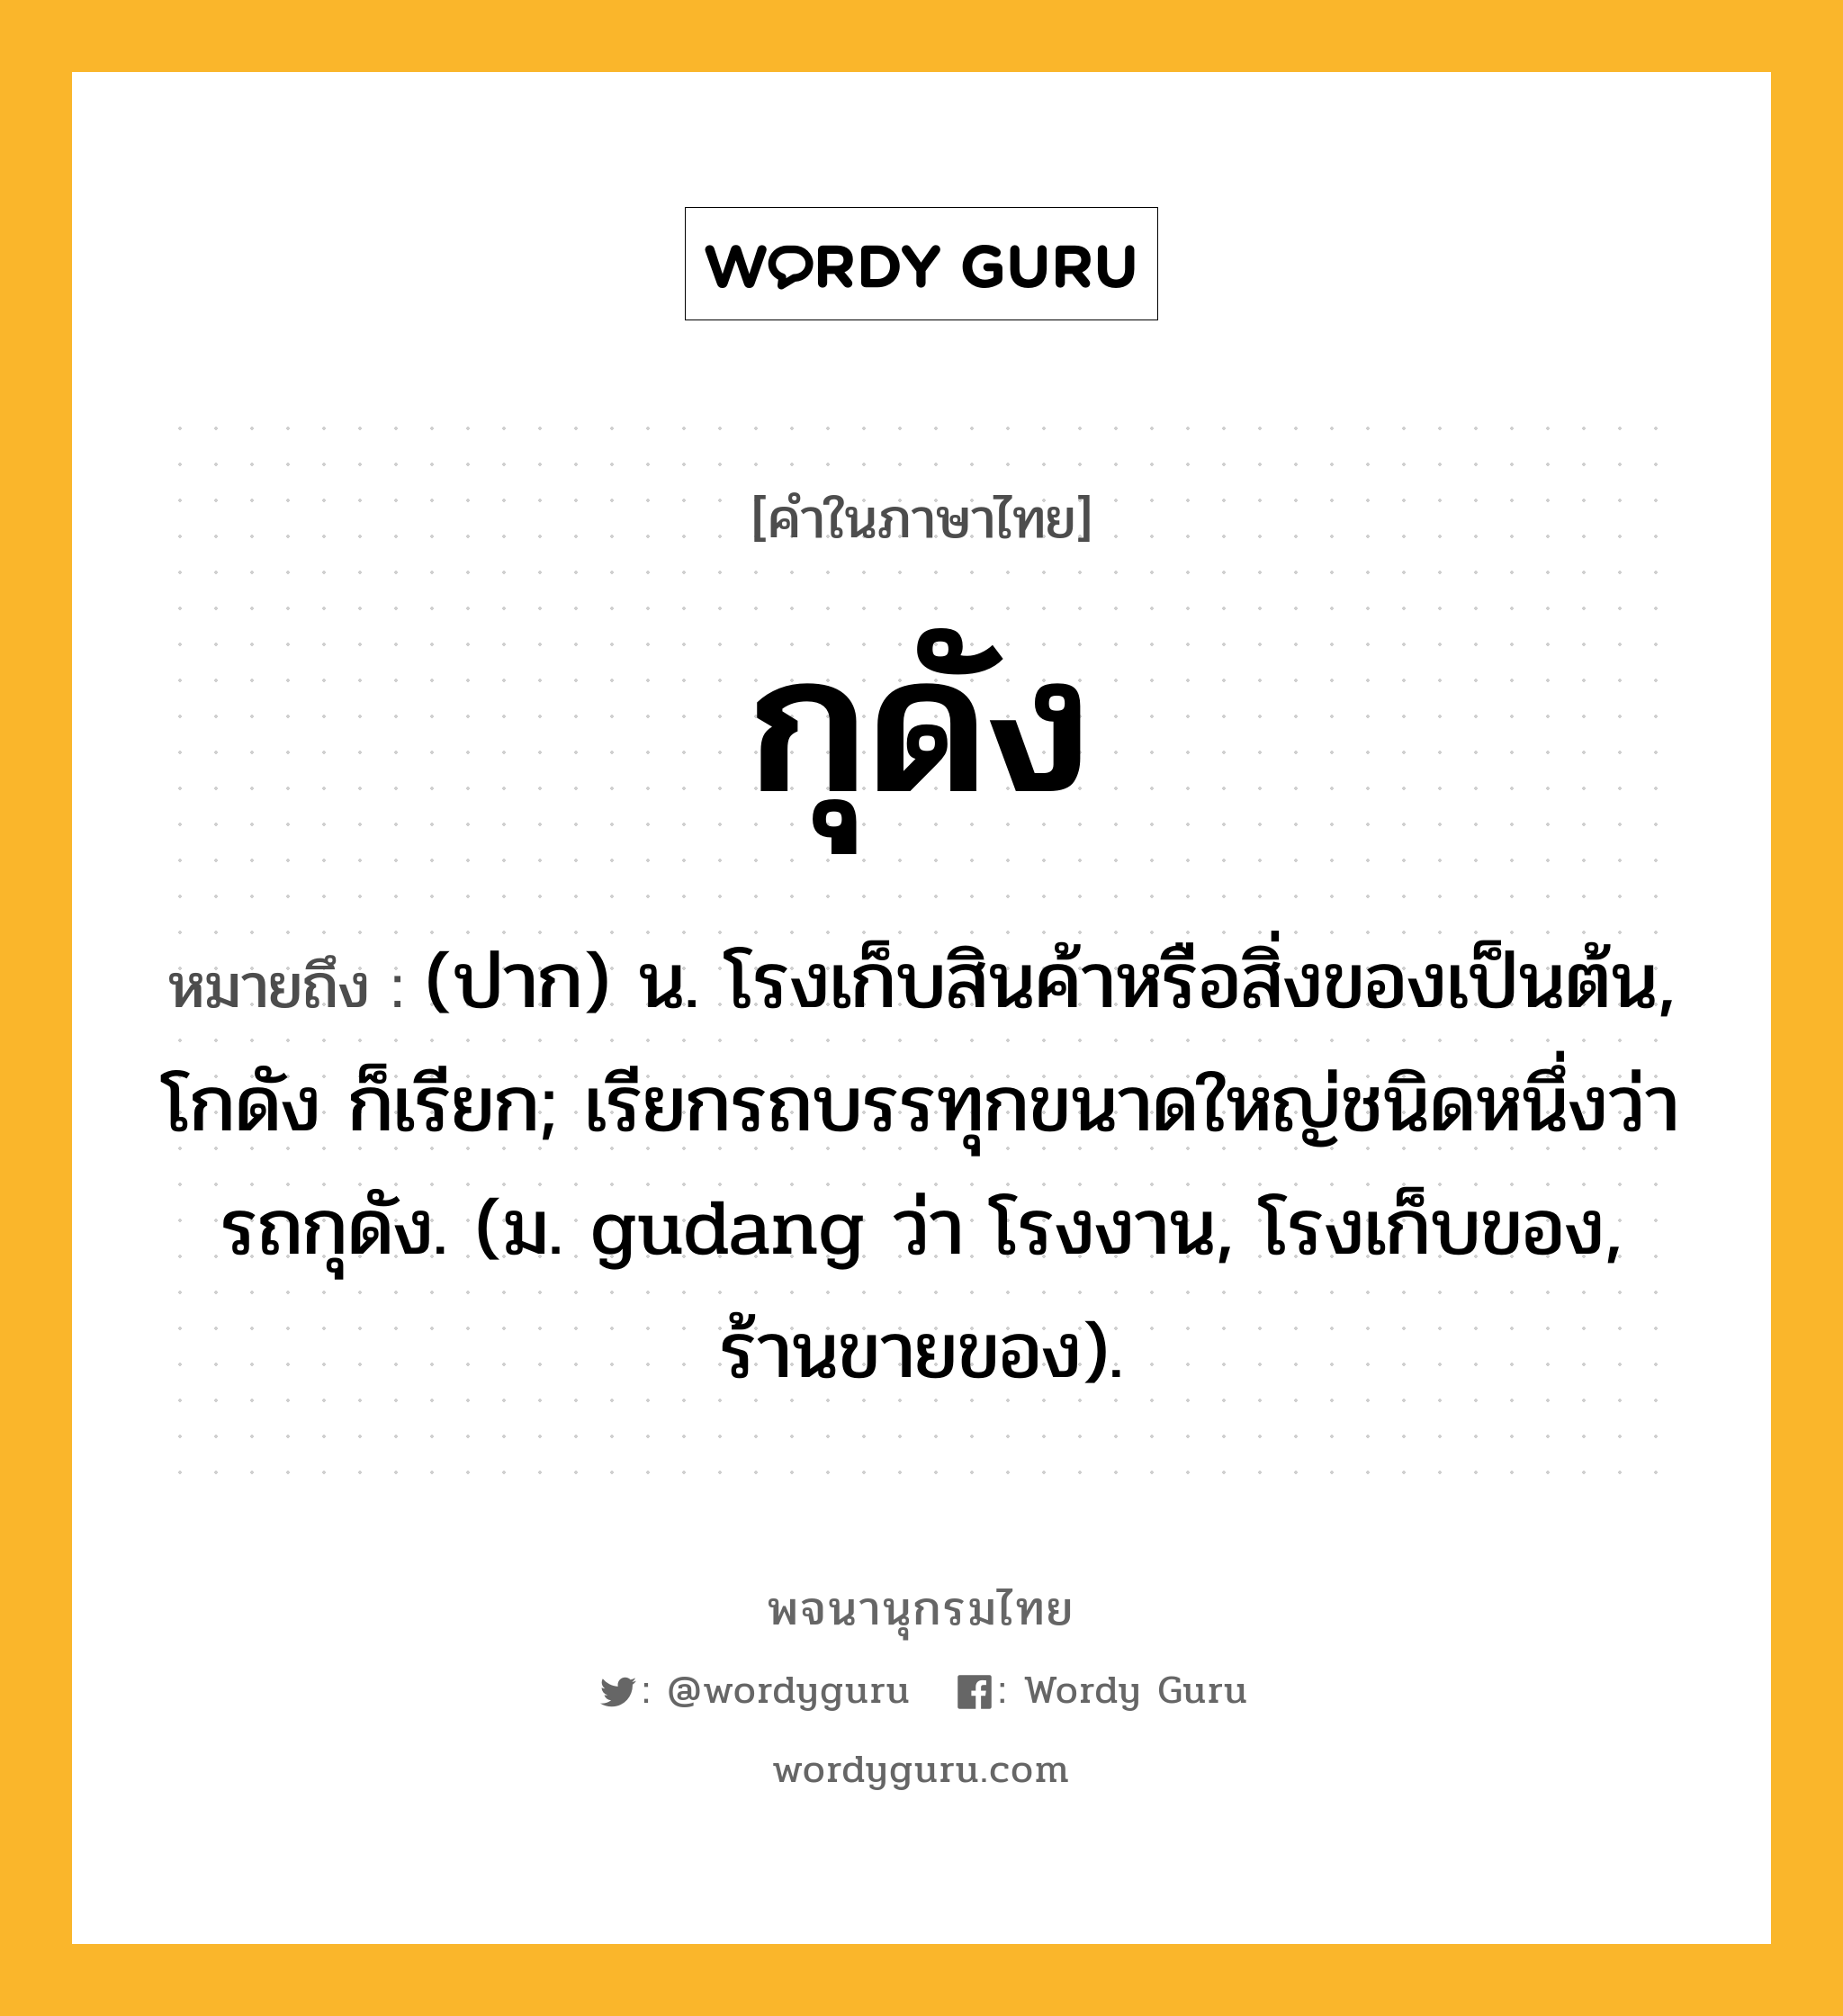 กุดัง ความหมาย หมายถึงอะไร?, คำในภาษาไทย กุดัง หมายถึง (ปาก) น. โรงเก็บสินค้าหรือสิ่งของเป็นต้น, โกดัง ก็เรียก; เรียกรถบรรทุกขนาดใหญ่ชนิดหนึ่งว่า รถกุดัง. (ม. gudang ว่า โรงงาน, โรงเก็บของ, ร้านขายของ).